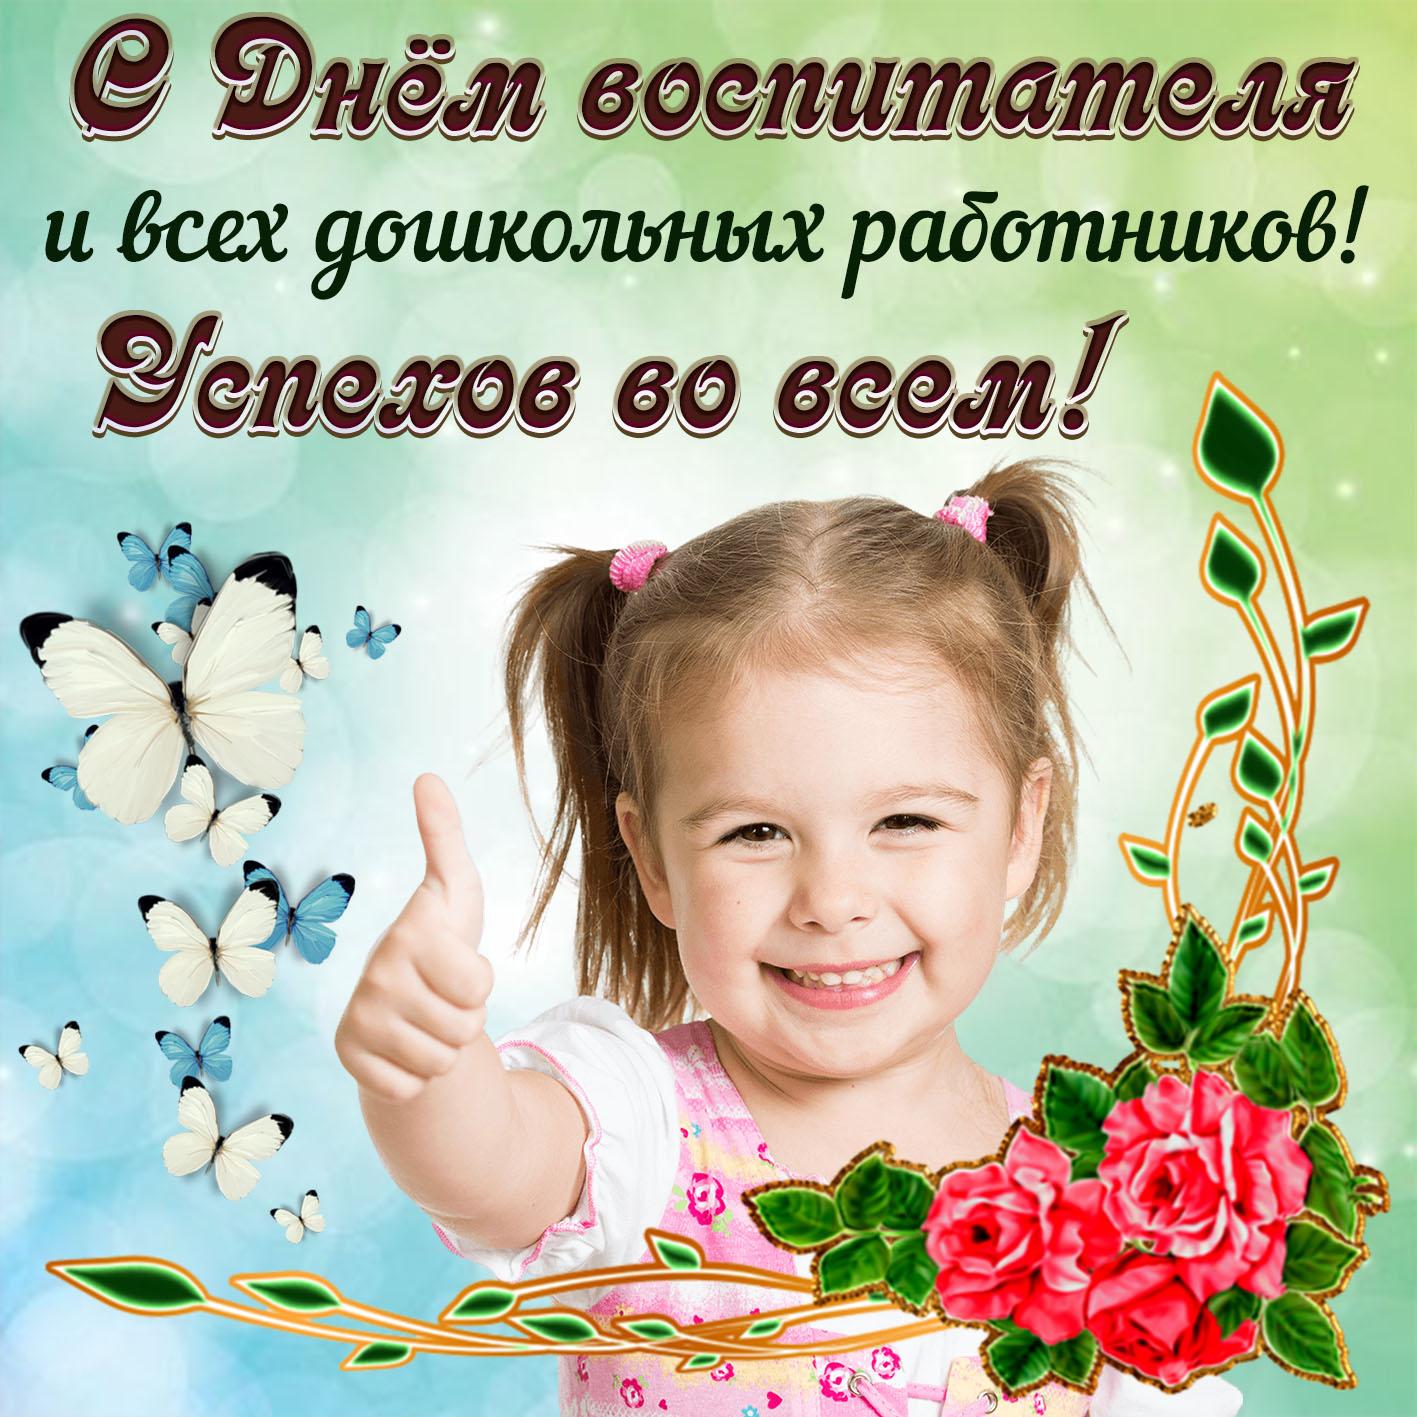 В Украине отмечают день воспитателя: поздравления и яркие открытки к празднику